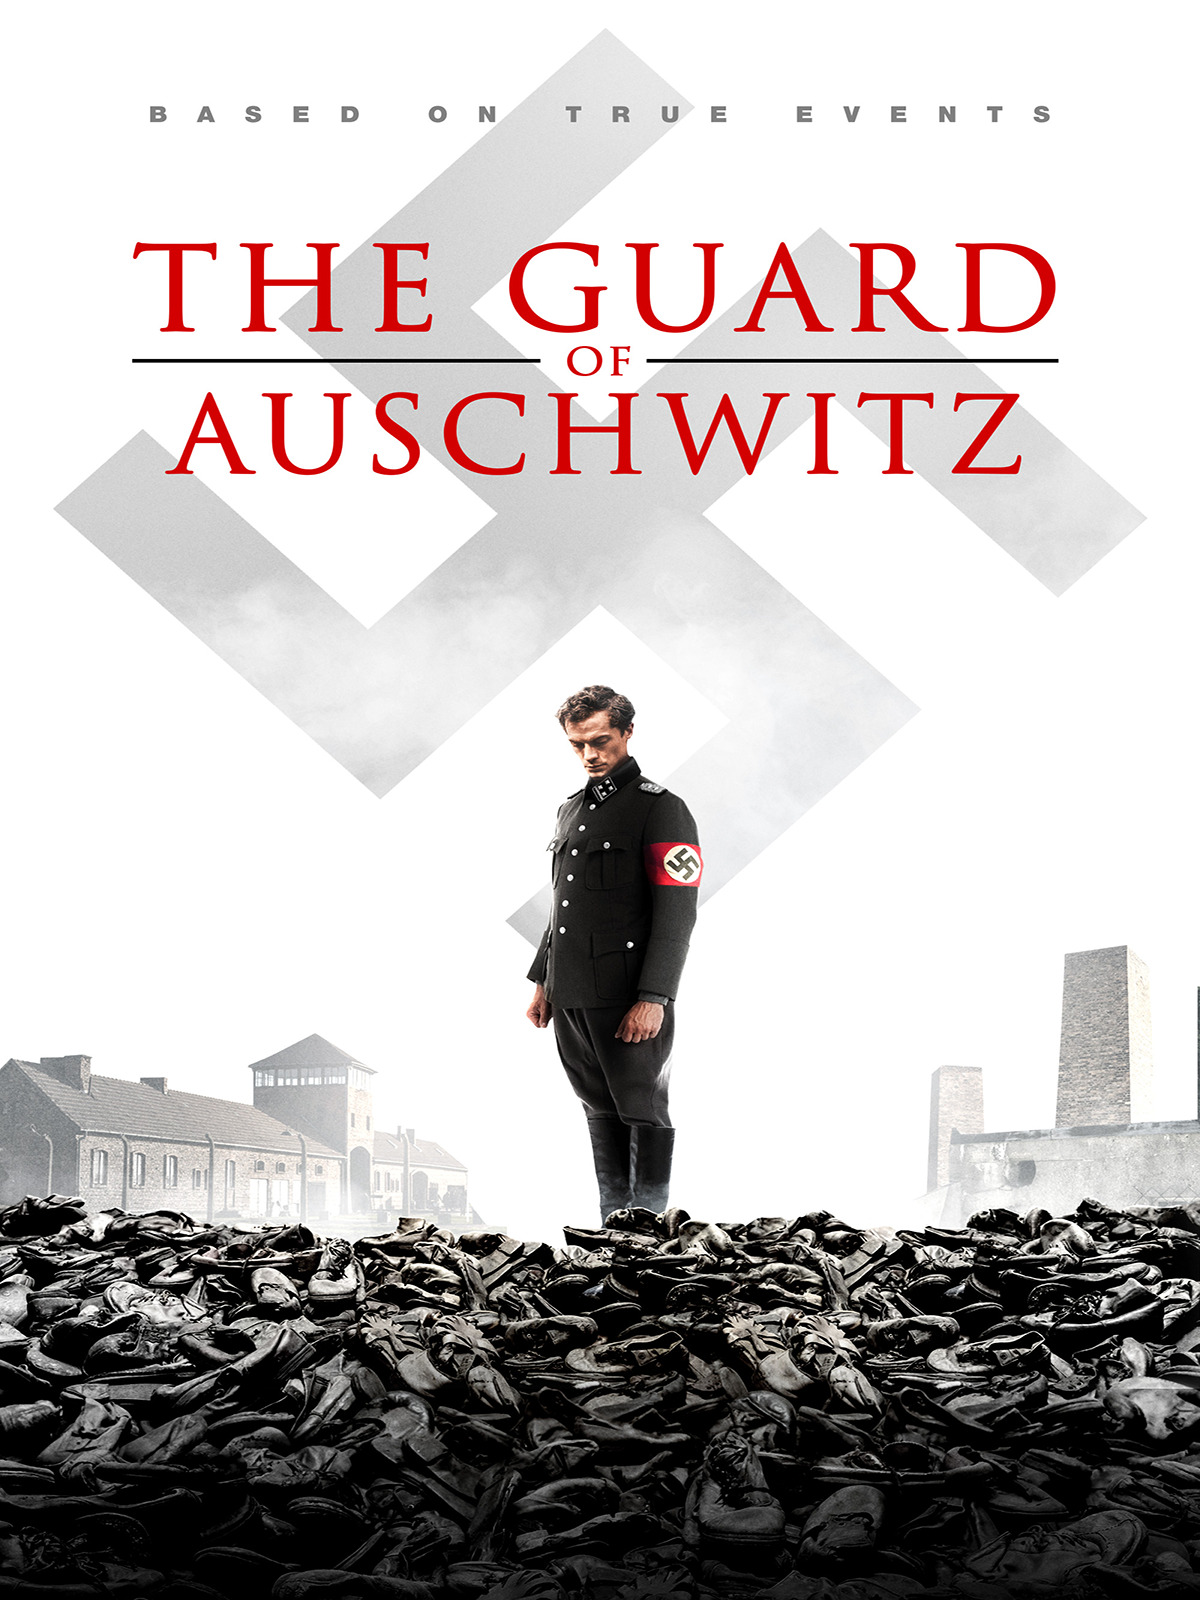 ดูหนังออนไลน์ฟรี The Guard Of Auschwitz (2018) หนังเต็มเรื่อง หนังมาสเตอร์ ดูหนังHD ดูหนังออนไลน์ ดูหนังใหม่